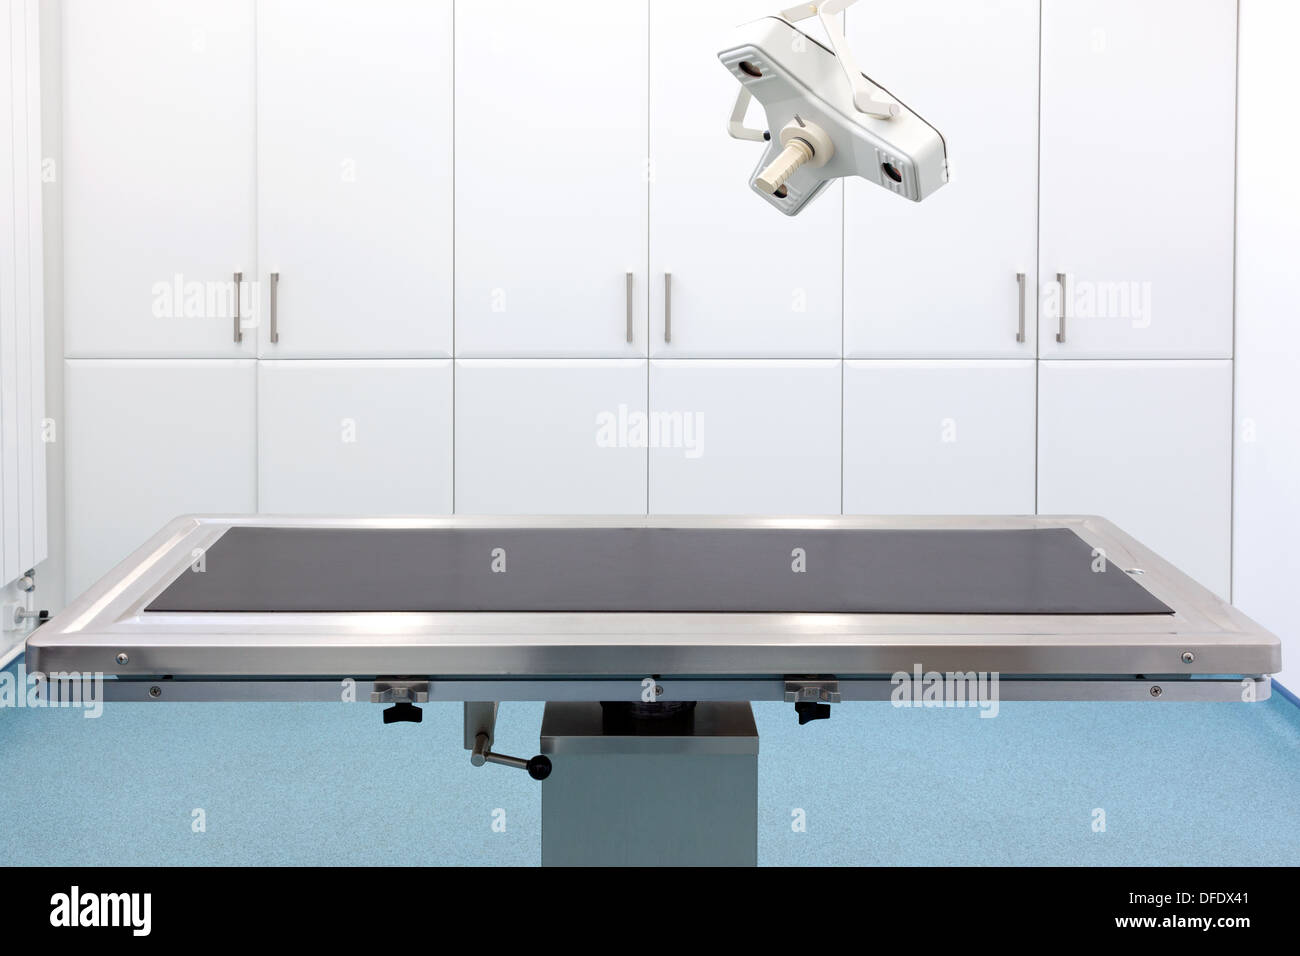 Table vide dans une salle d'opération avec la lumière au-dessus. Banque D'Images